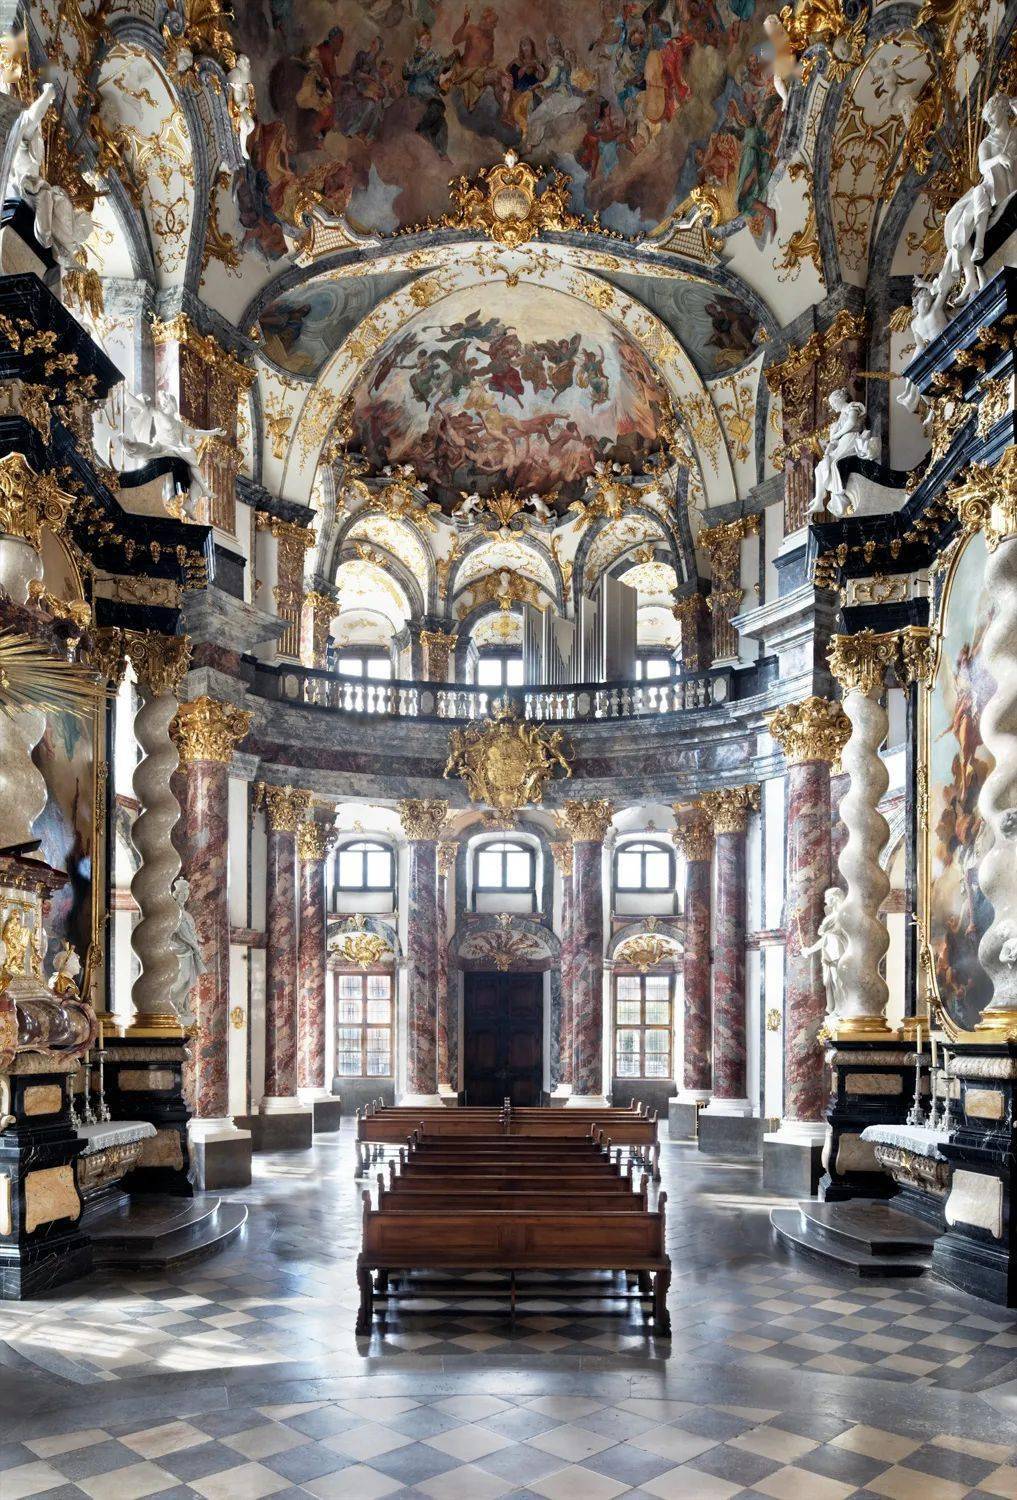 维尔茨堡宫由宫殿,花园和广场三部分组成,建于1720年至1744年的欧洲